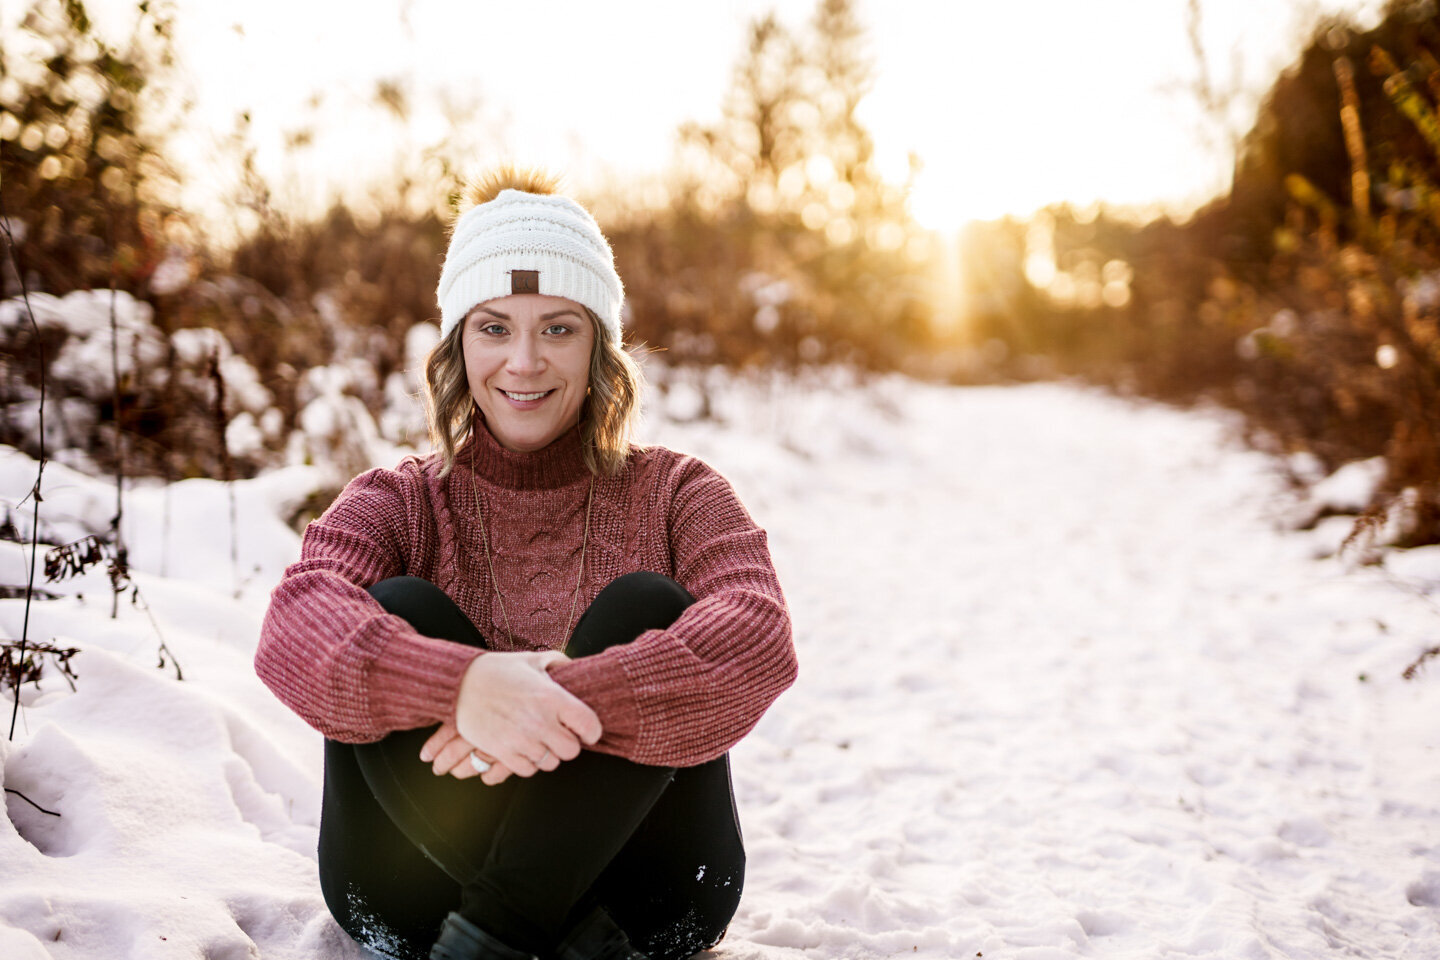 Jen Heller sitting in a snowy field at sunset